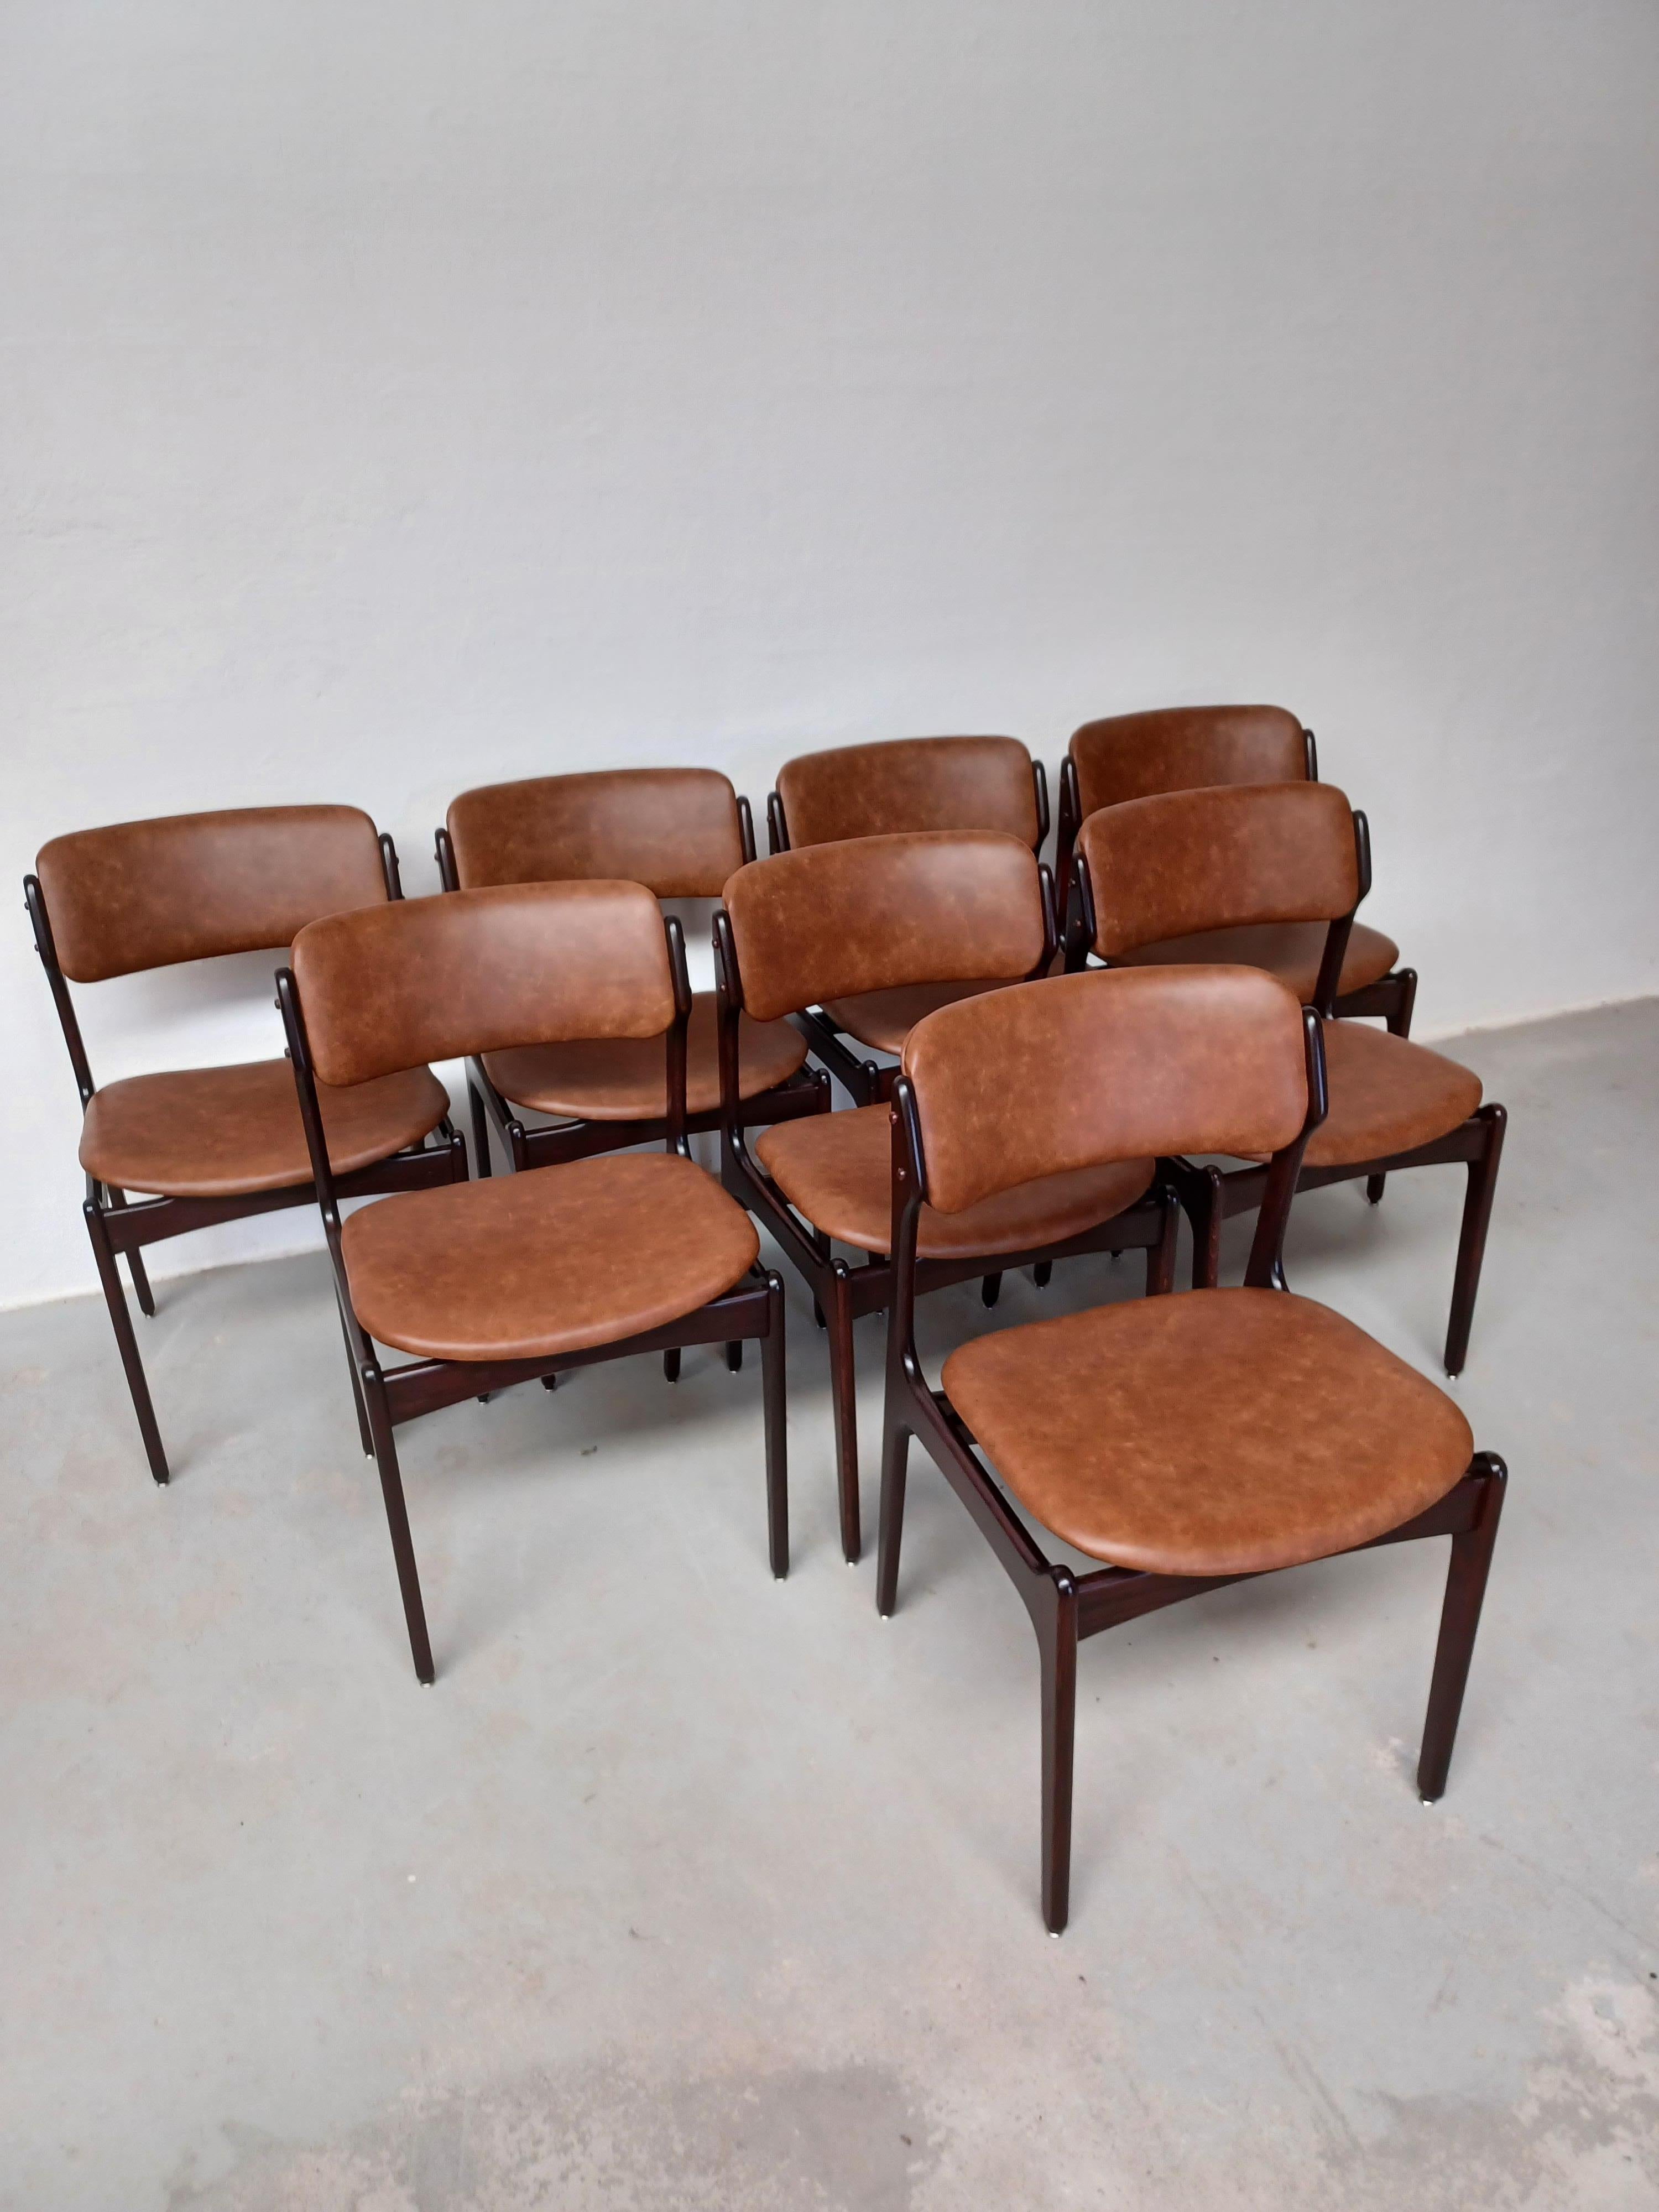 1960er Jahre Satz von acht  Vollständig restaurierte Erik Buch Esszimmerstühle aus gebeizter Eiche, individuell gepolstert.

Die Stühle haben eine einfache, aber solide Konstruktion mit eleganten Linien und bieten ein sehr bequemes Sitzerlebnis auf